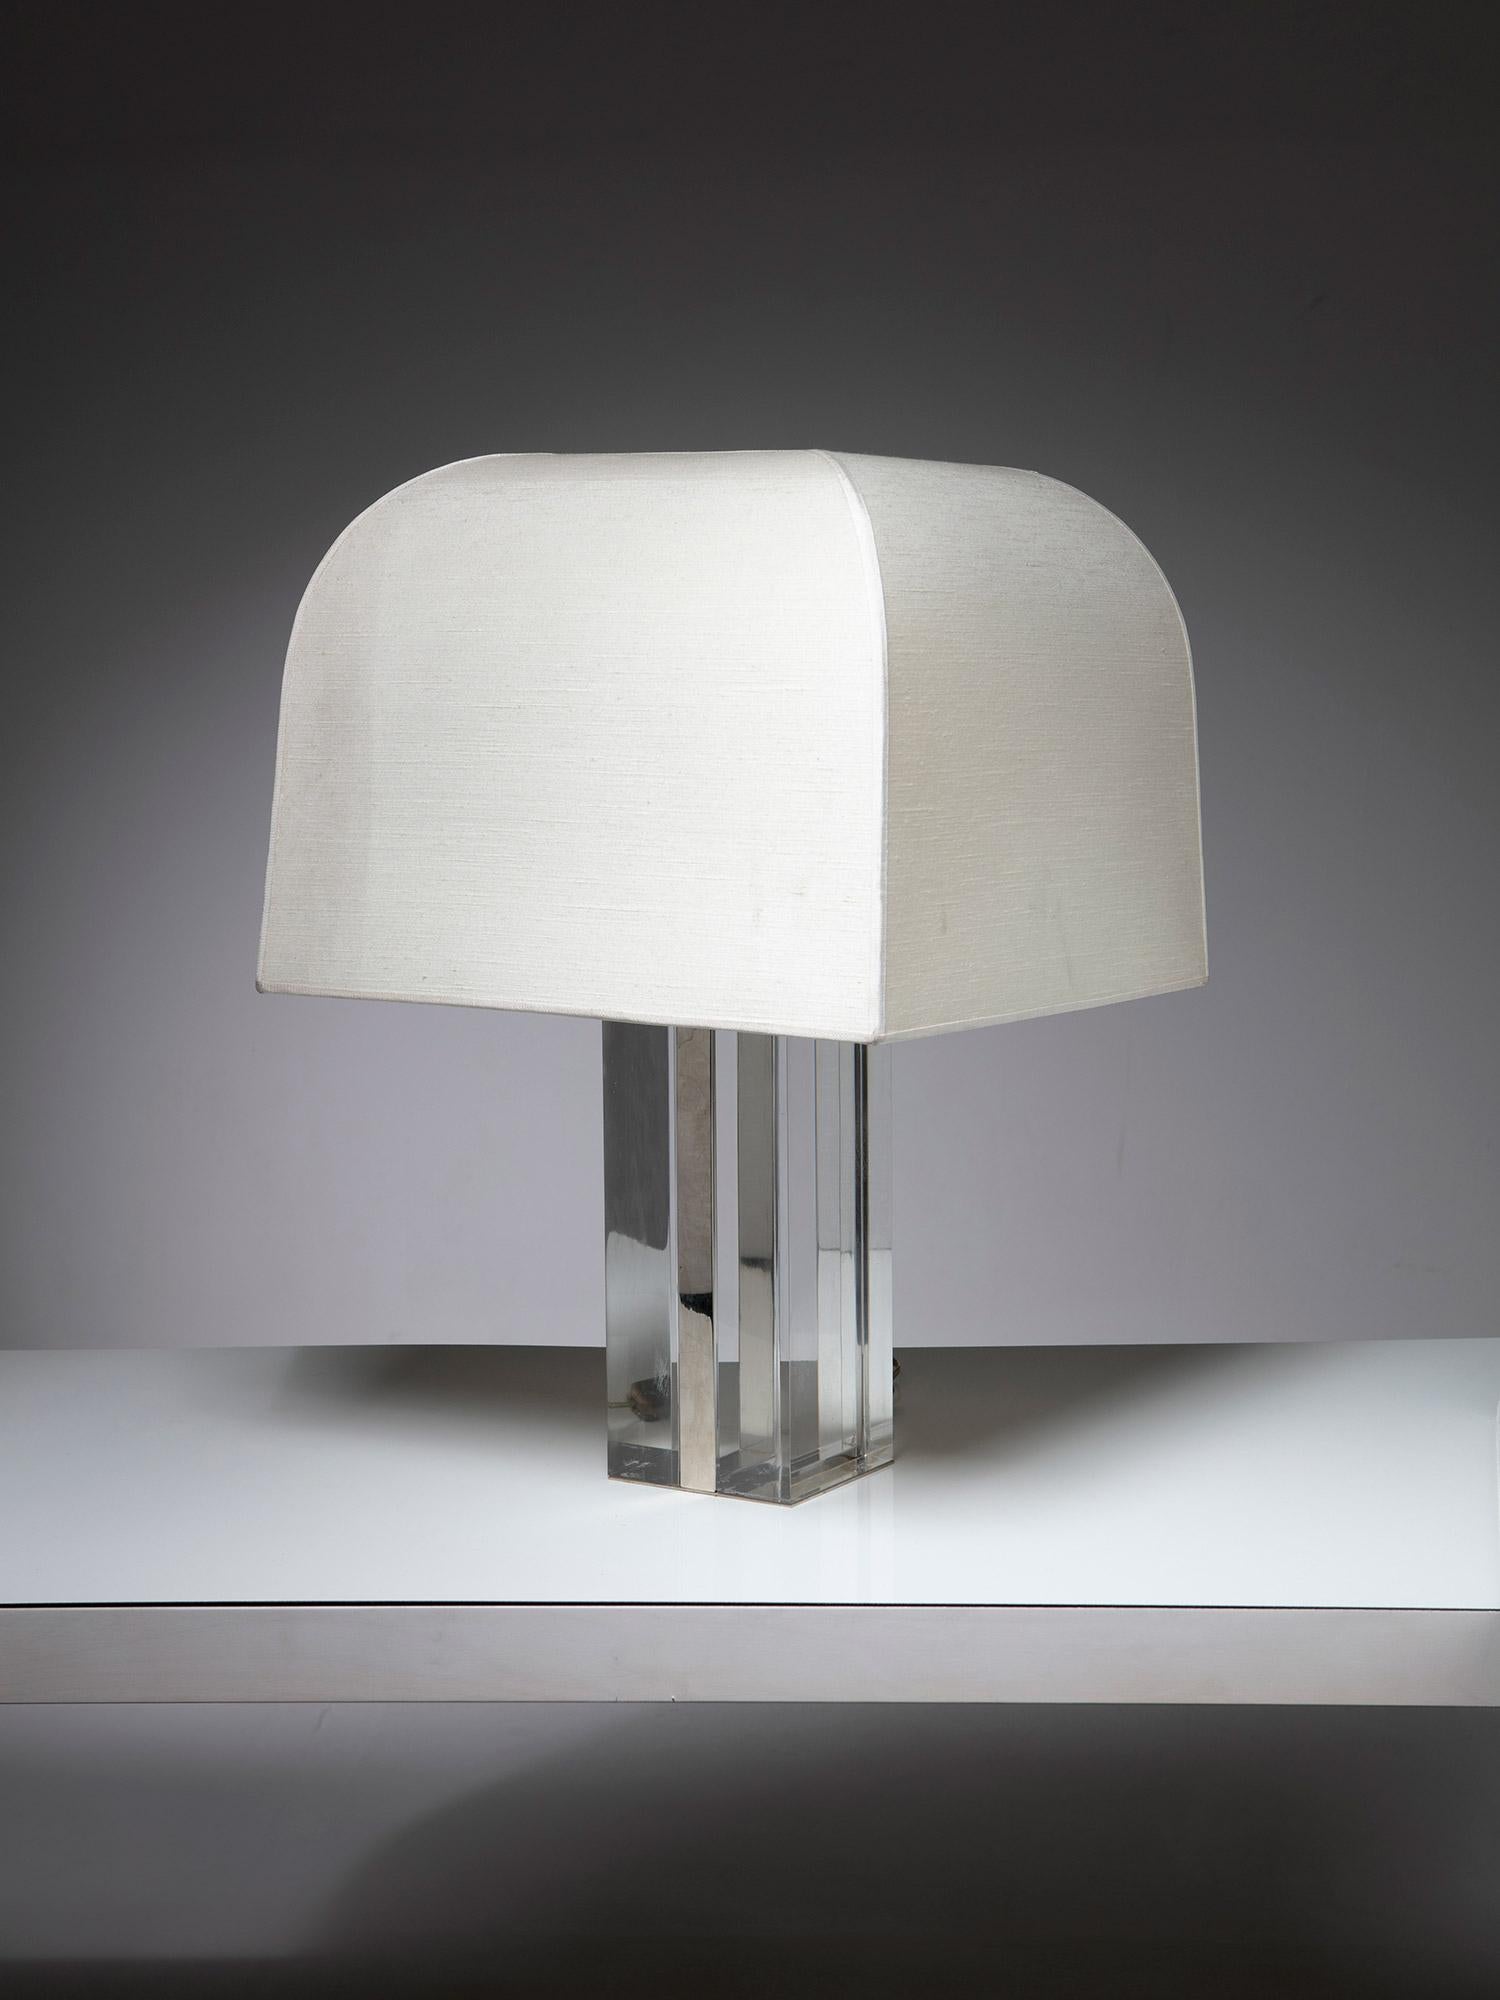 Lampe de table italienne des années 1960.
Grande base en plexiglas massif avec détails chromés et abat-jour en textile d'origine.